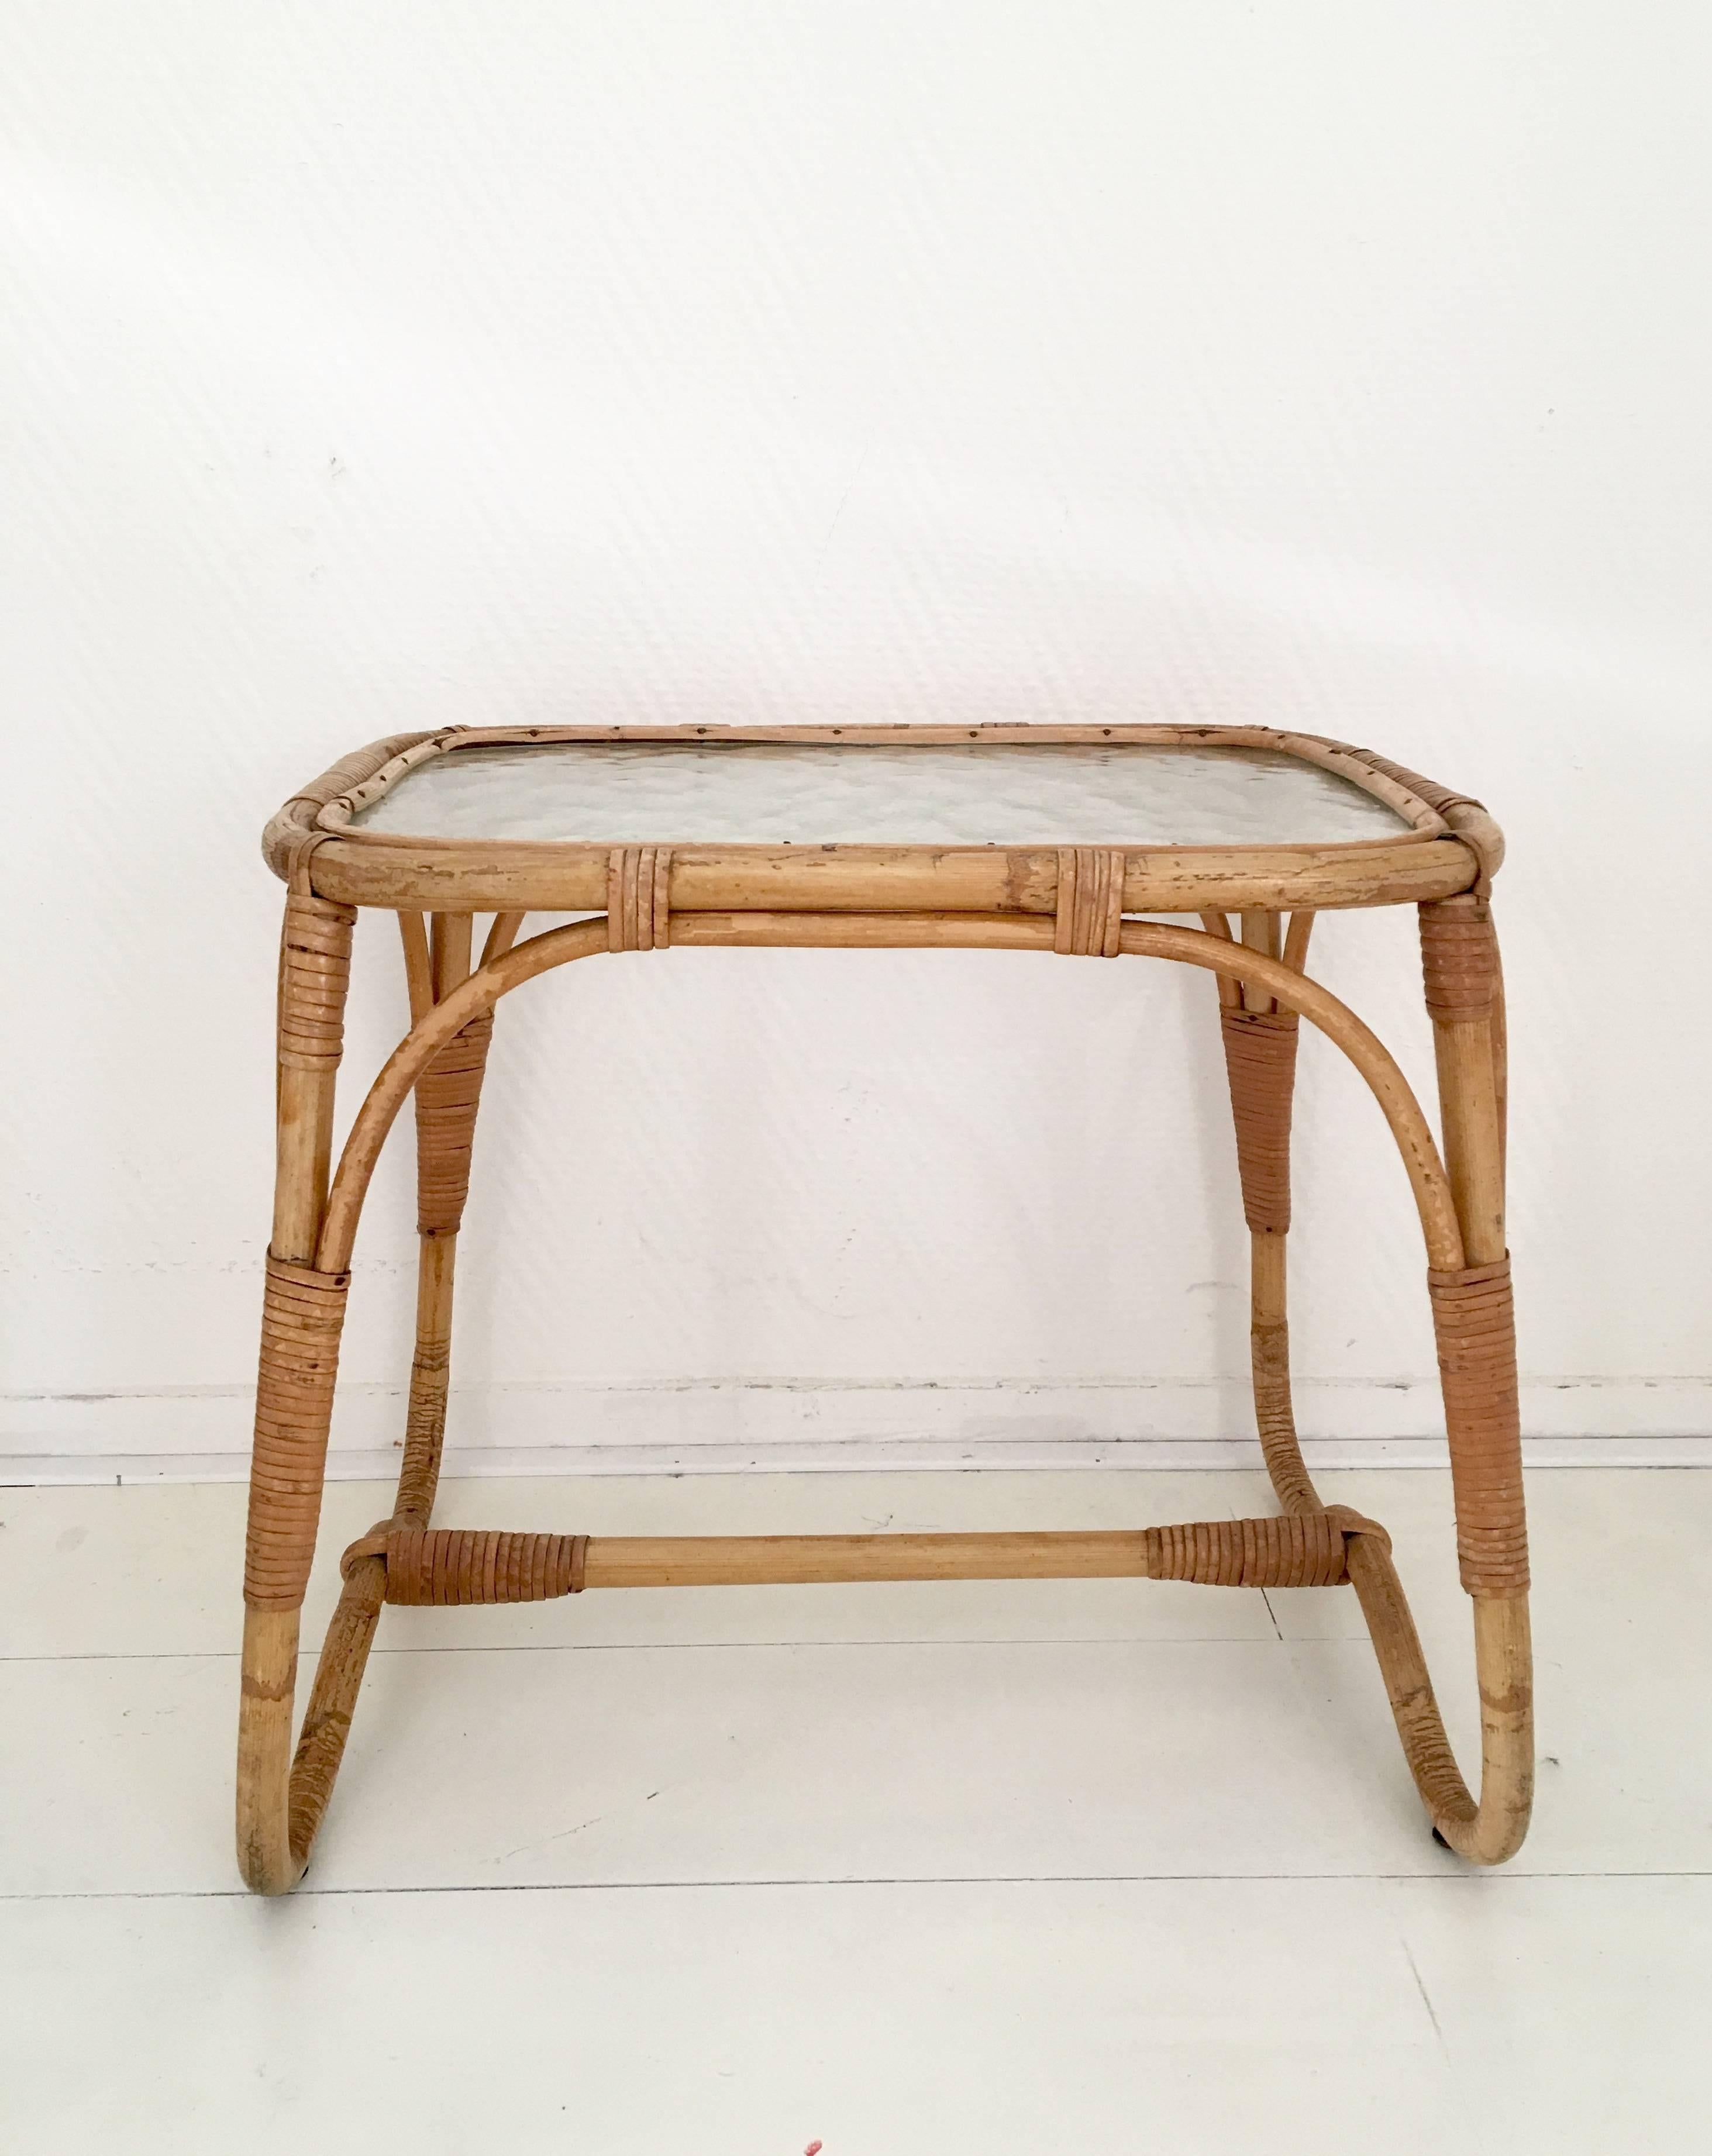 Cette petite table basse ou d'appoint a été conçue et fabriquée aux Pays-Bas, vers les années 1960. Il présente une base en rotin/bambou et un plateau en verre. La table est en très bon état et ne présente que des signes minimes d'âge et